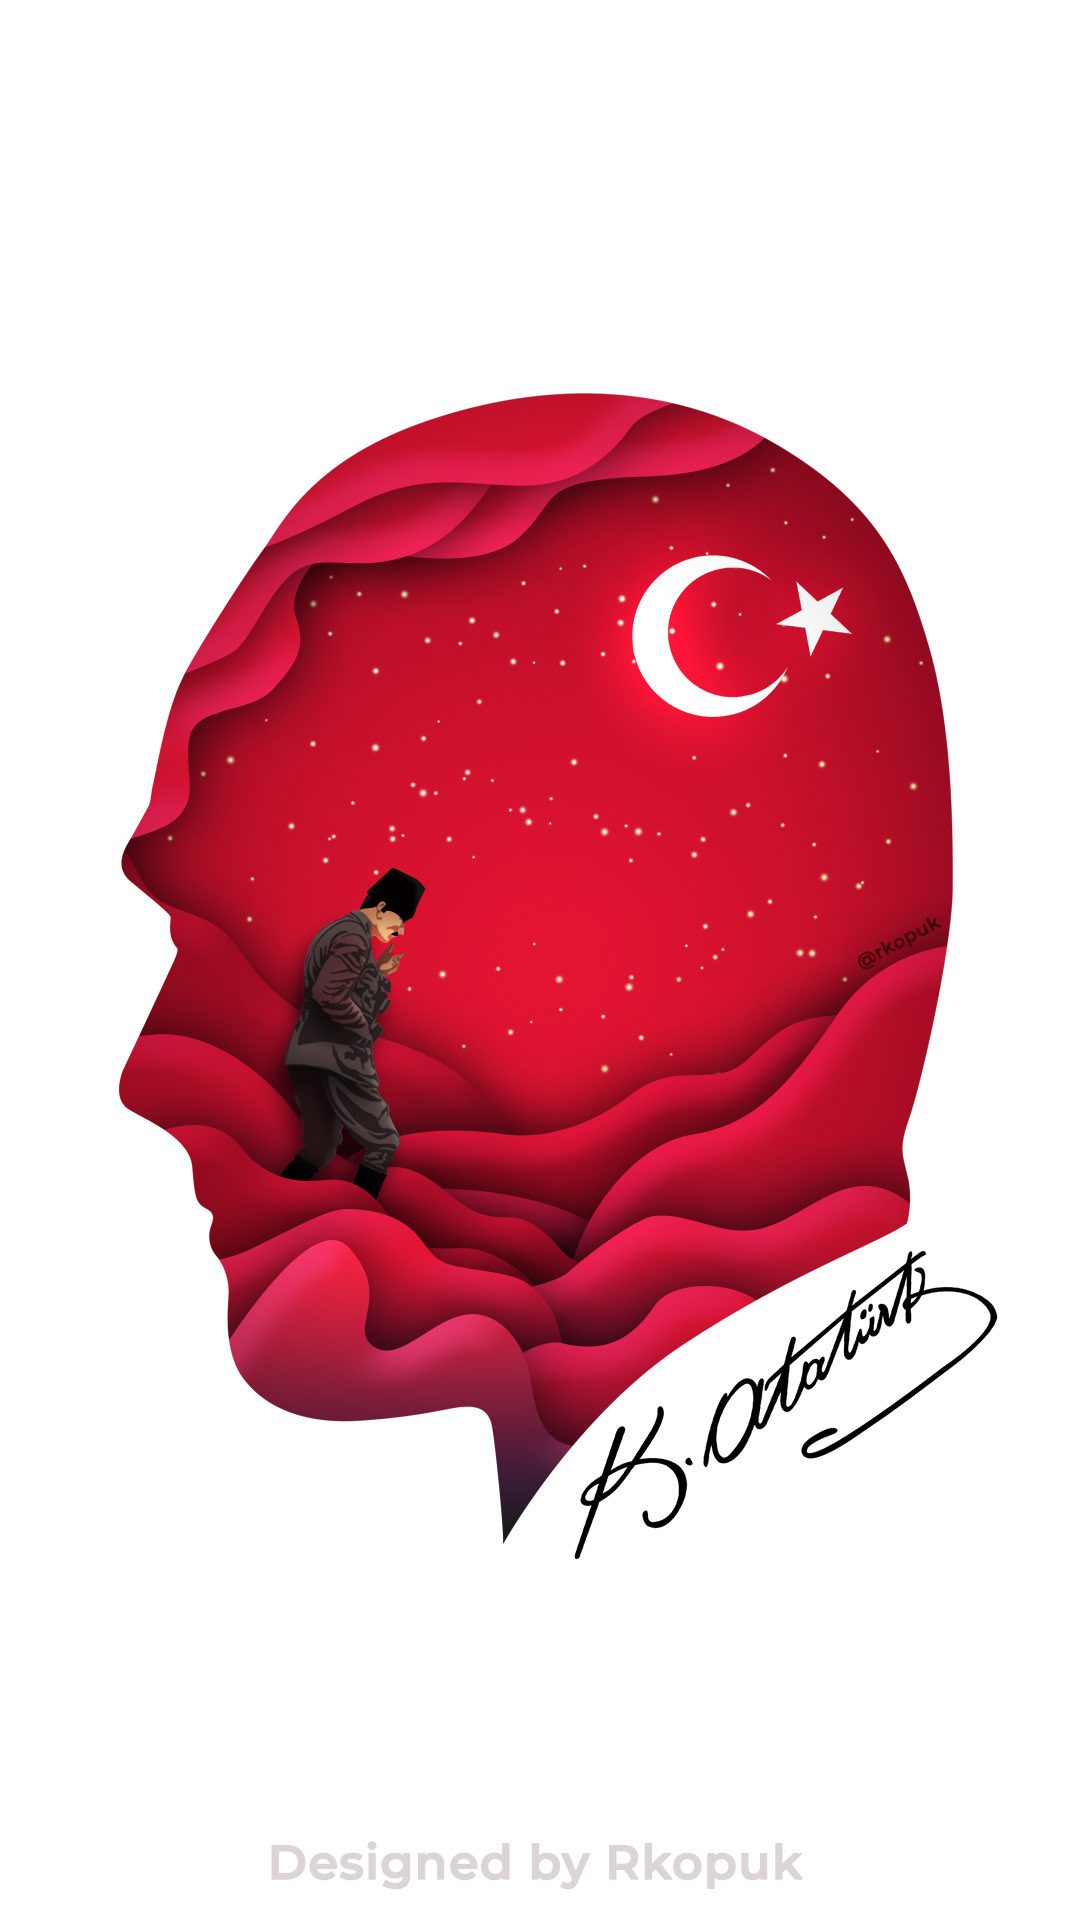 Ataturk Ataturk papercut poster